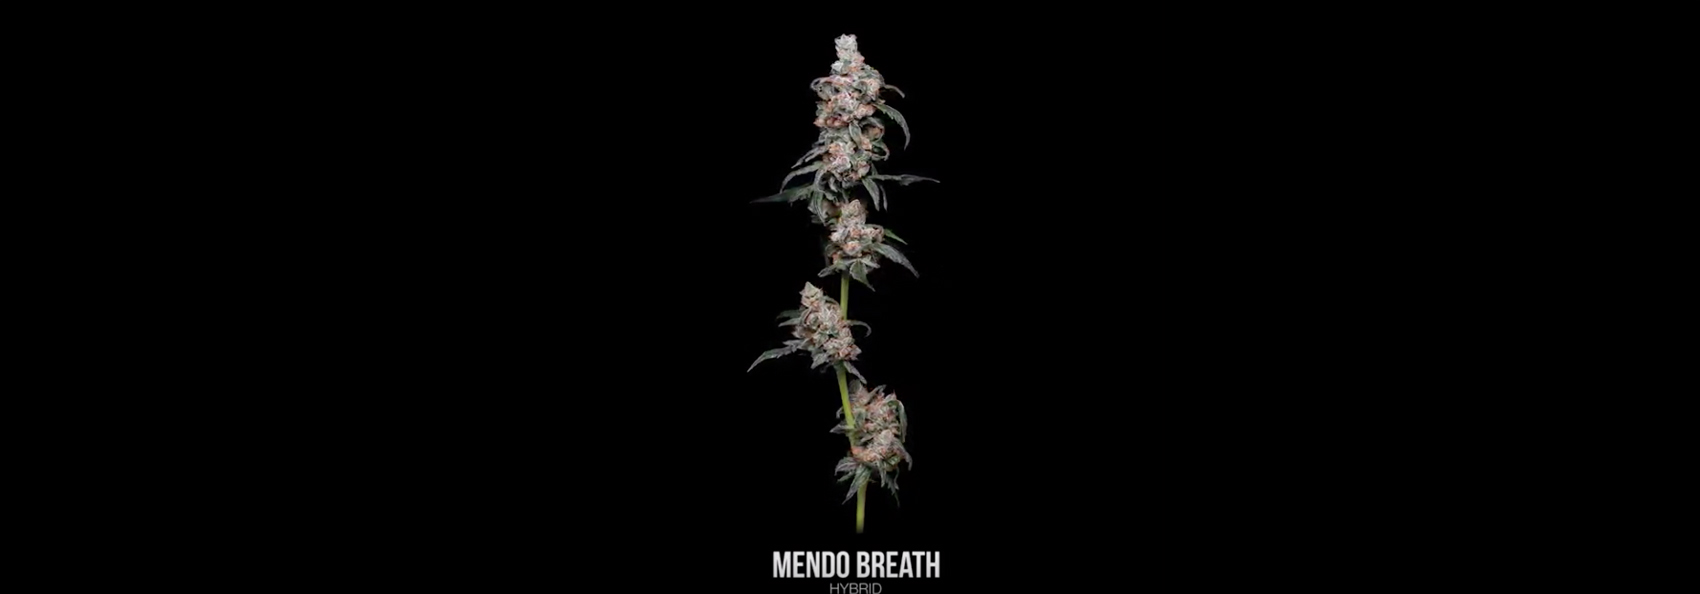 Mendo Breath 360